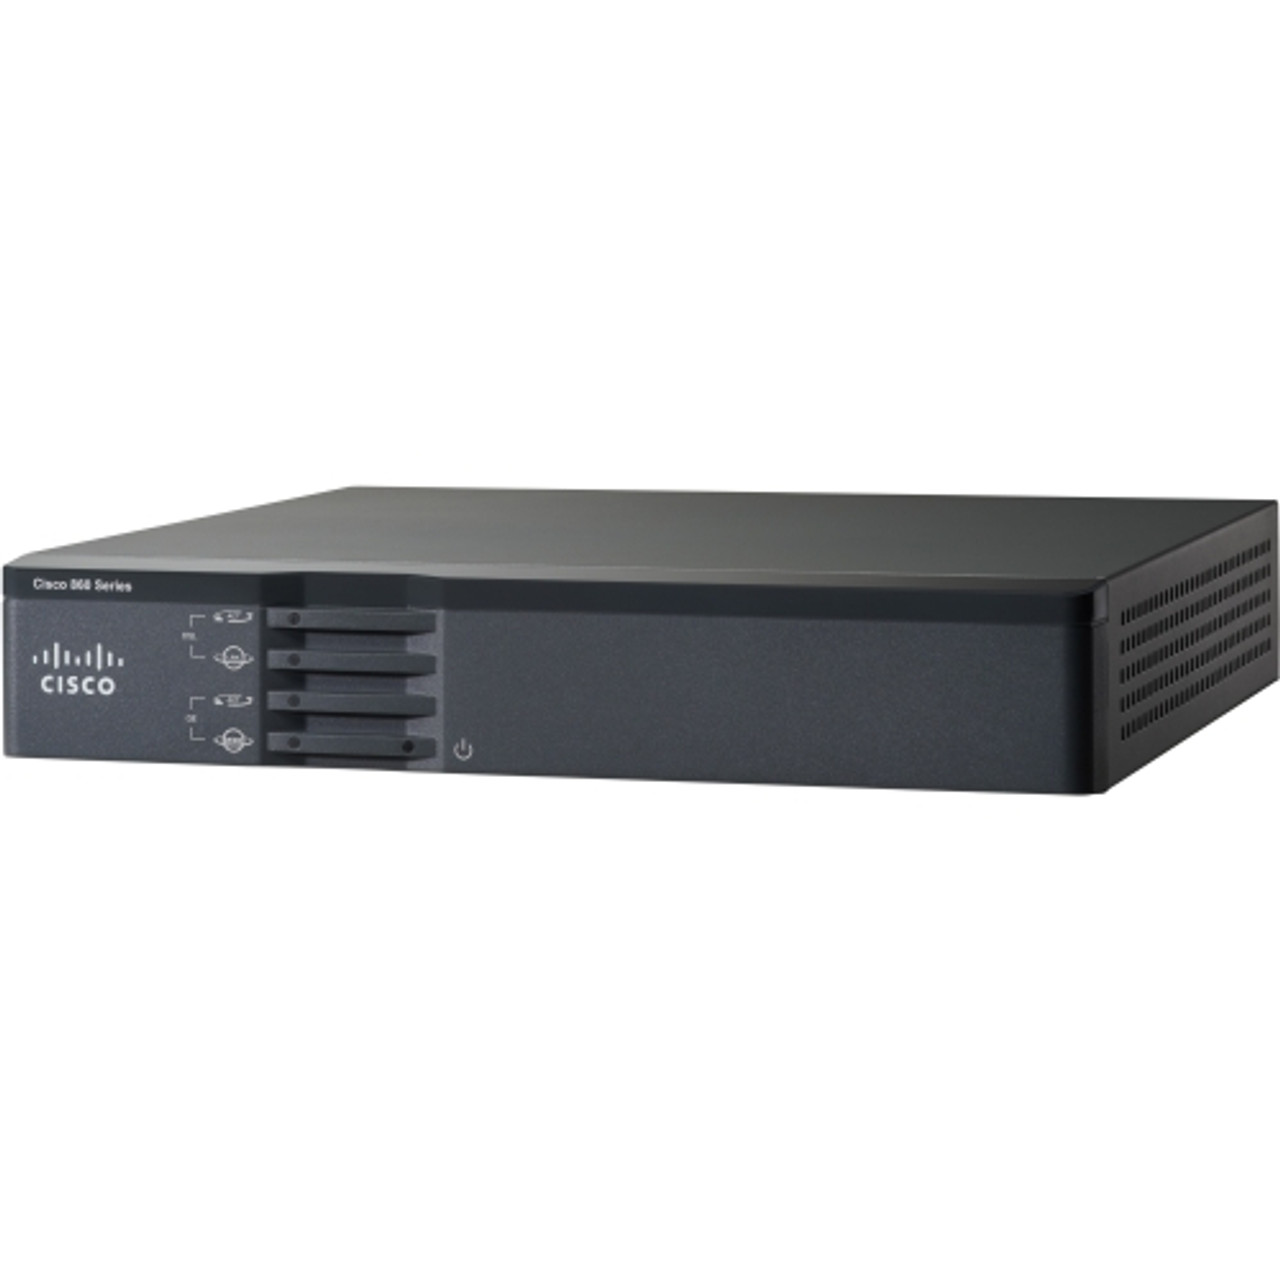 C867VAE-K9 Cisco 867VAE ADSL2+, VDSL2 Modem/Wireless Router 5 x Network Port USB Fast Ethernet VPN Supported Desktop, Rack-mountable (Refurbished)